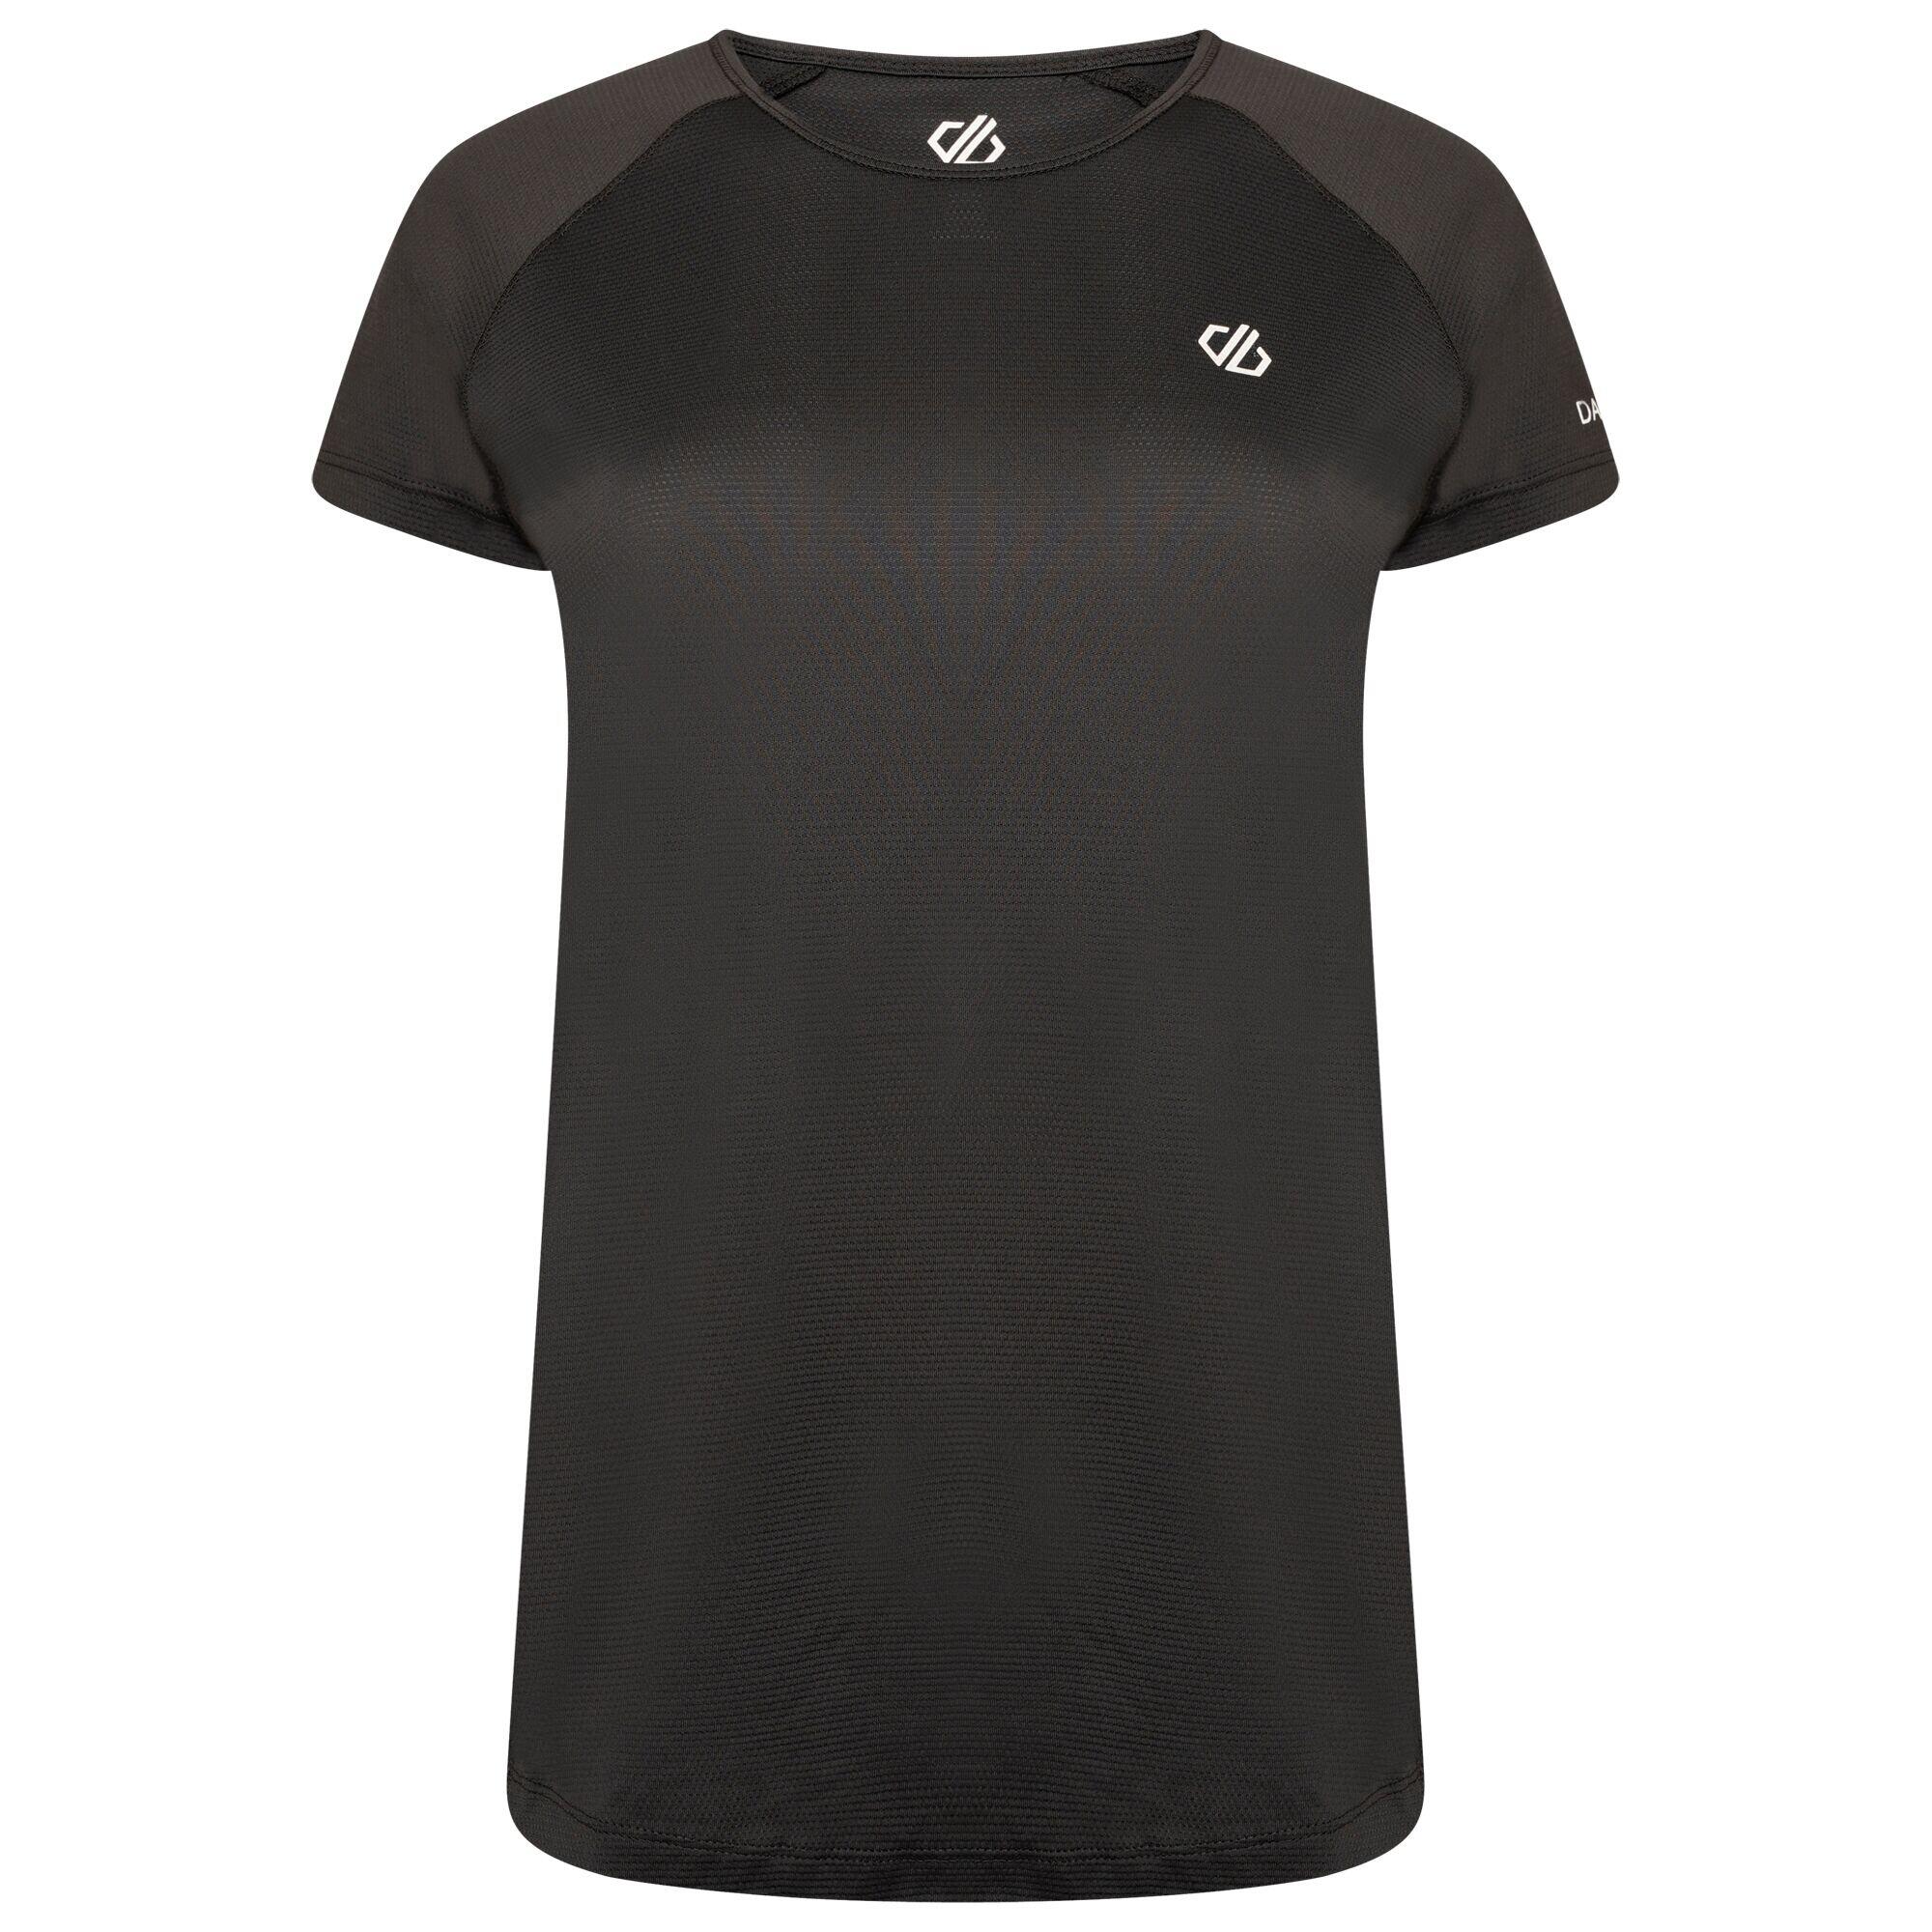 Corral Women's Fitness Short Sleeve T-Shirt - Black 4/7